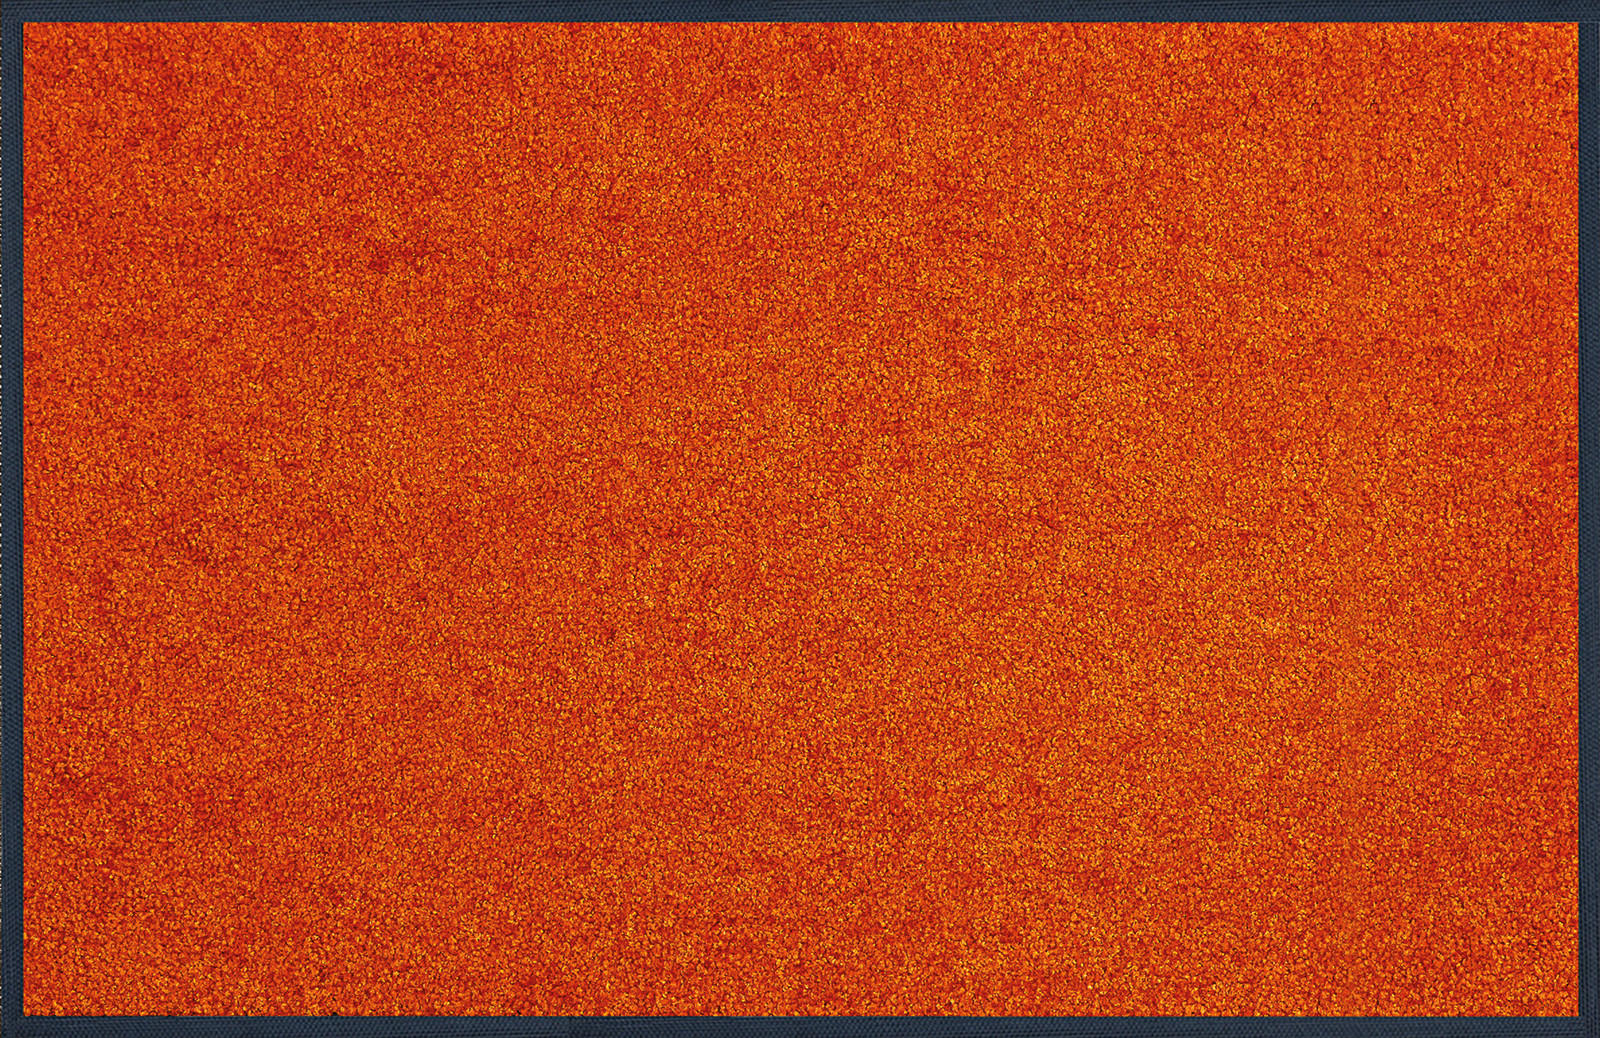 KÜCHENTEPPICH 75/120 cm Burnt Orange  - Orange, KONVENTIONELL, Kunststoff (75/120cm) - wash+dry